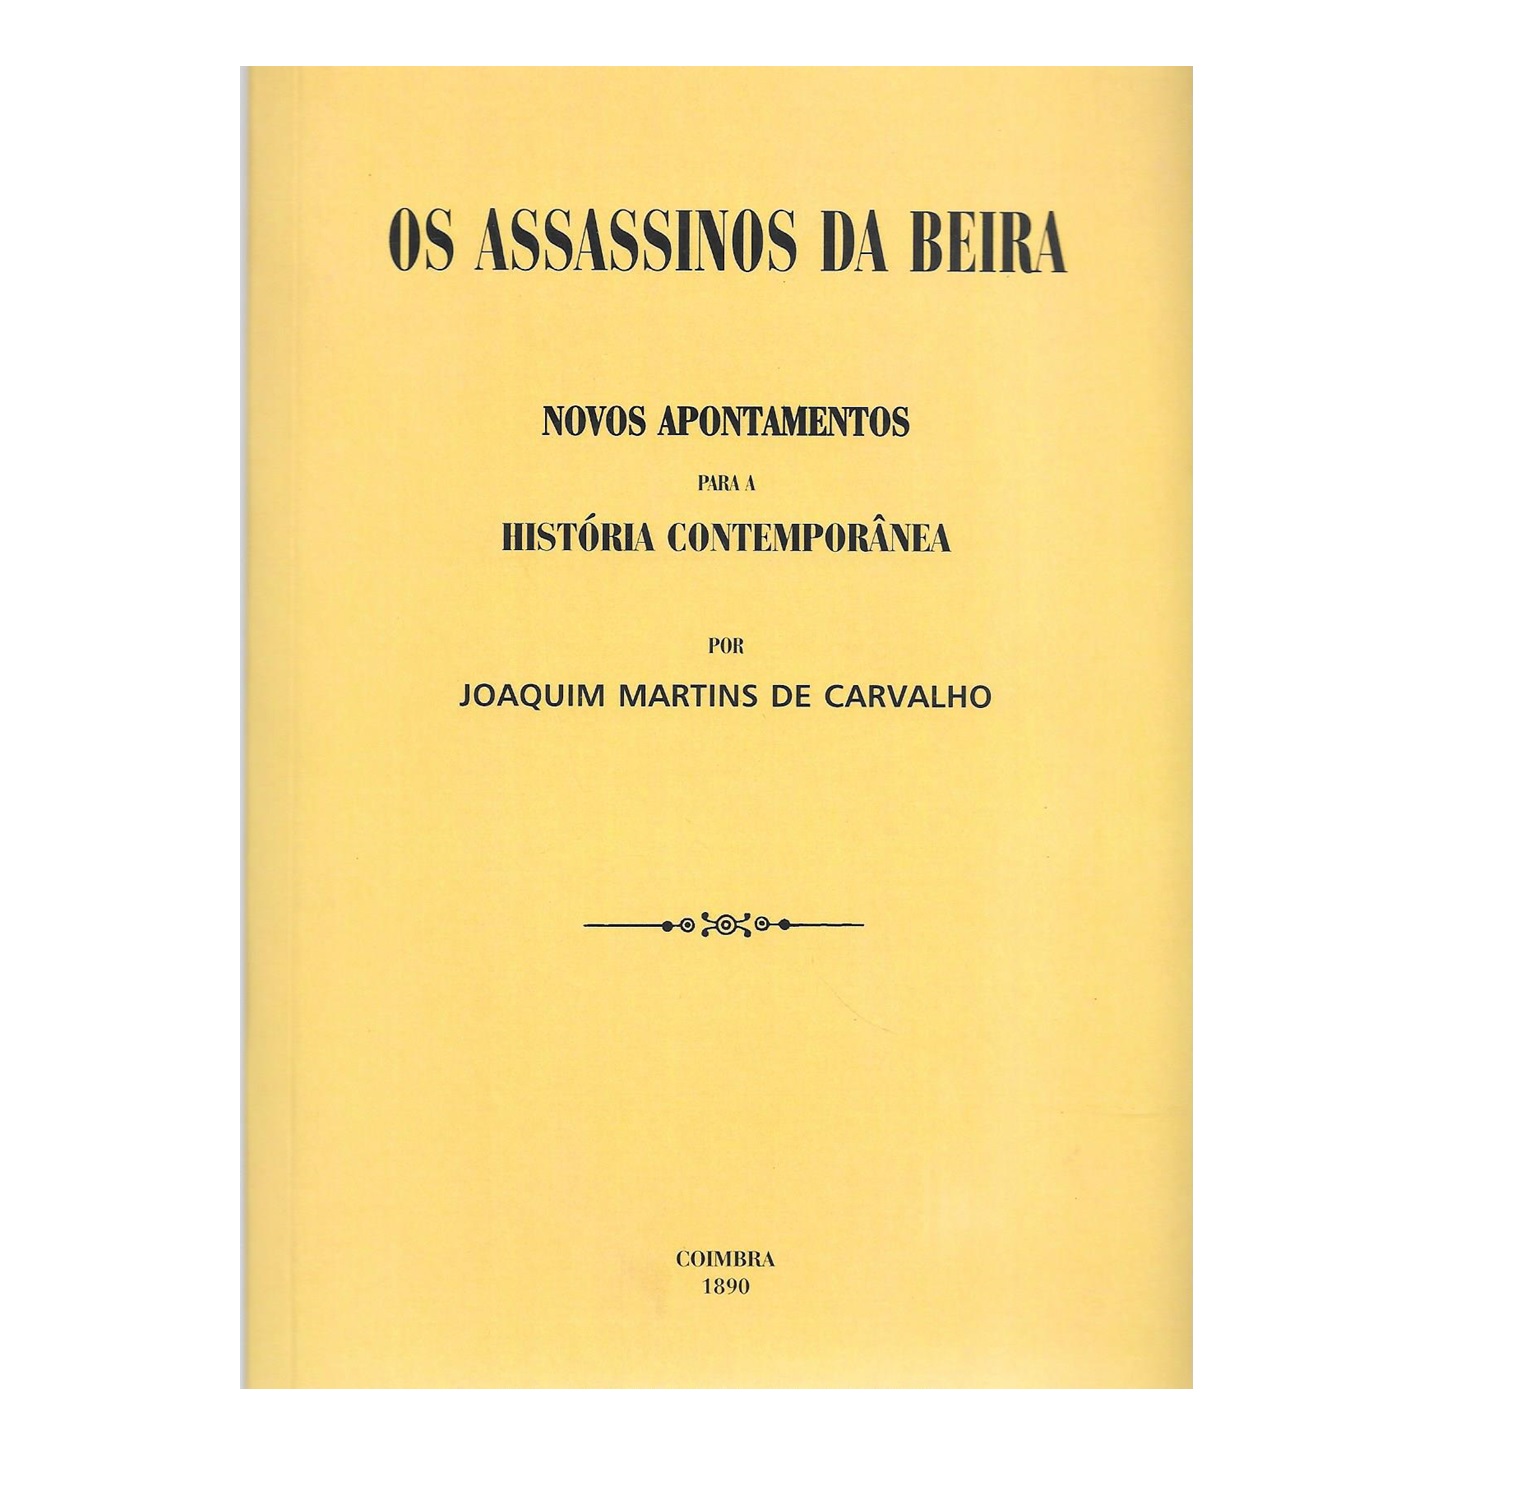  OS ASSASSINOS DA BEIRA [1890]